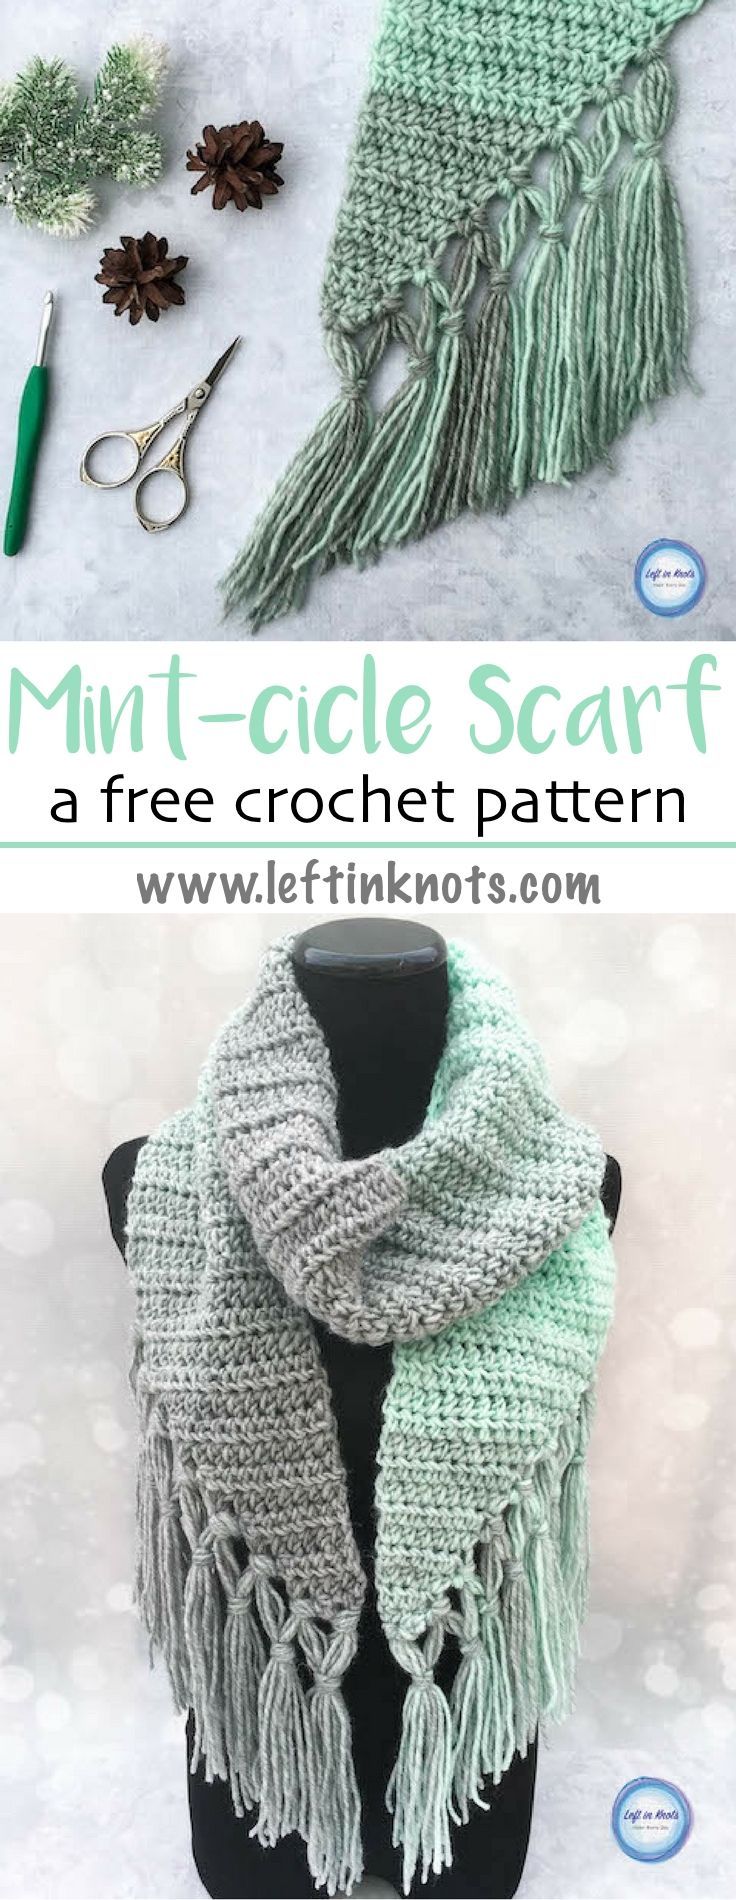 Crochet-Mint-cicle-Scarf-Free-Pattern-—-Left-in-Knots.jpg